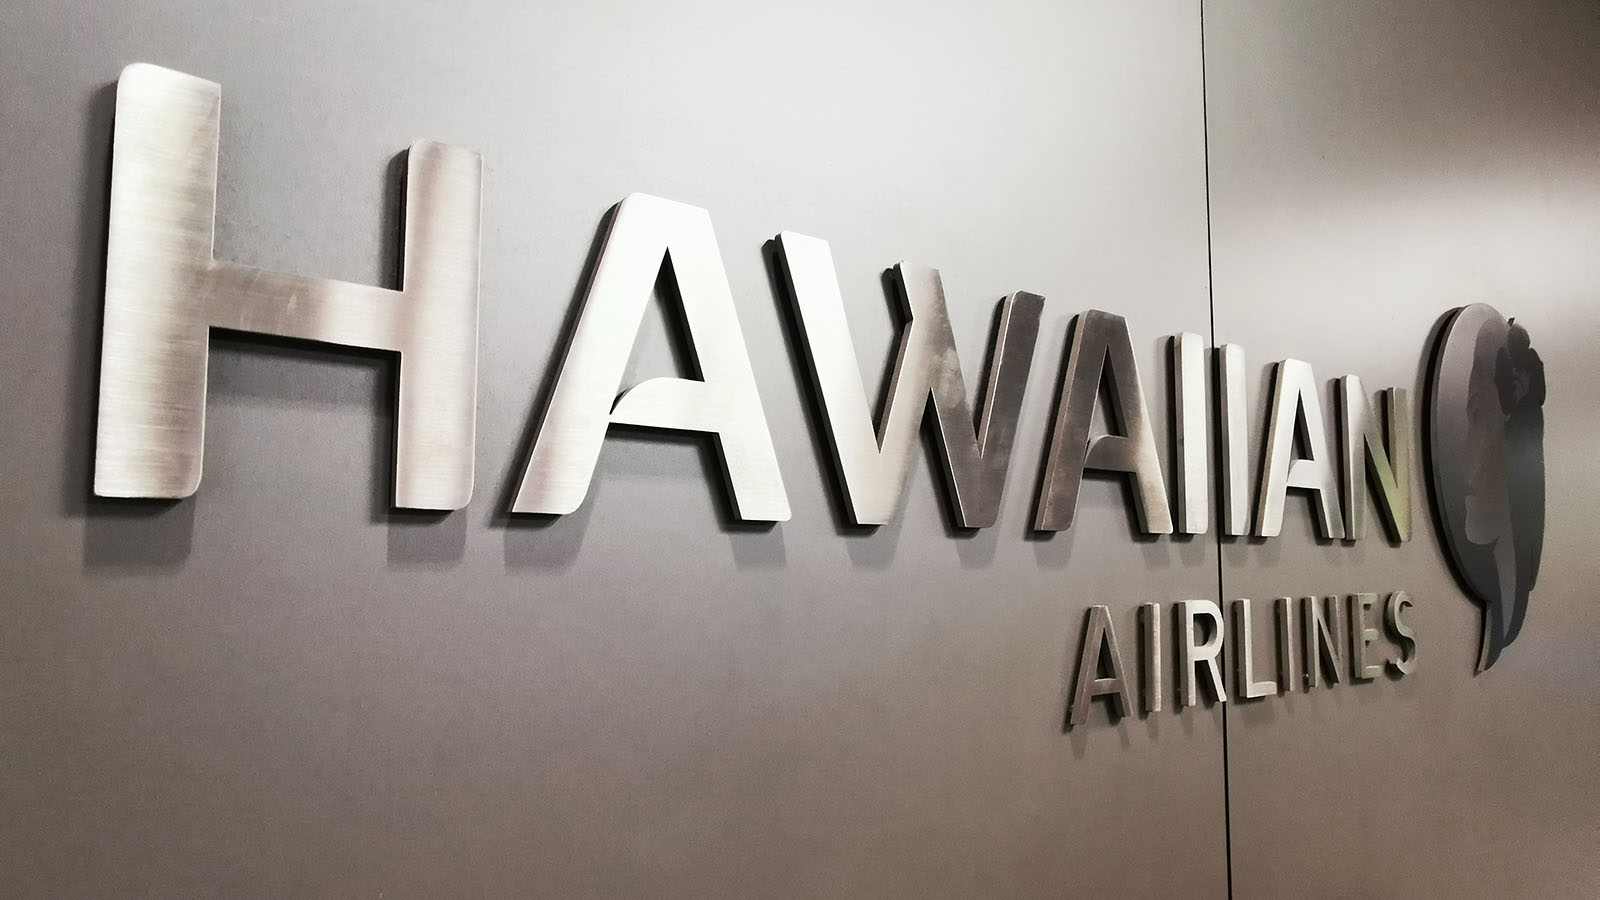 Outside Hawaiian Airlines' lounge in Honolulu